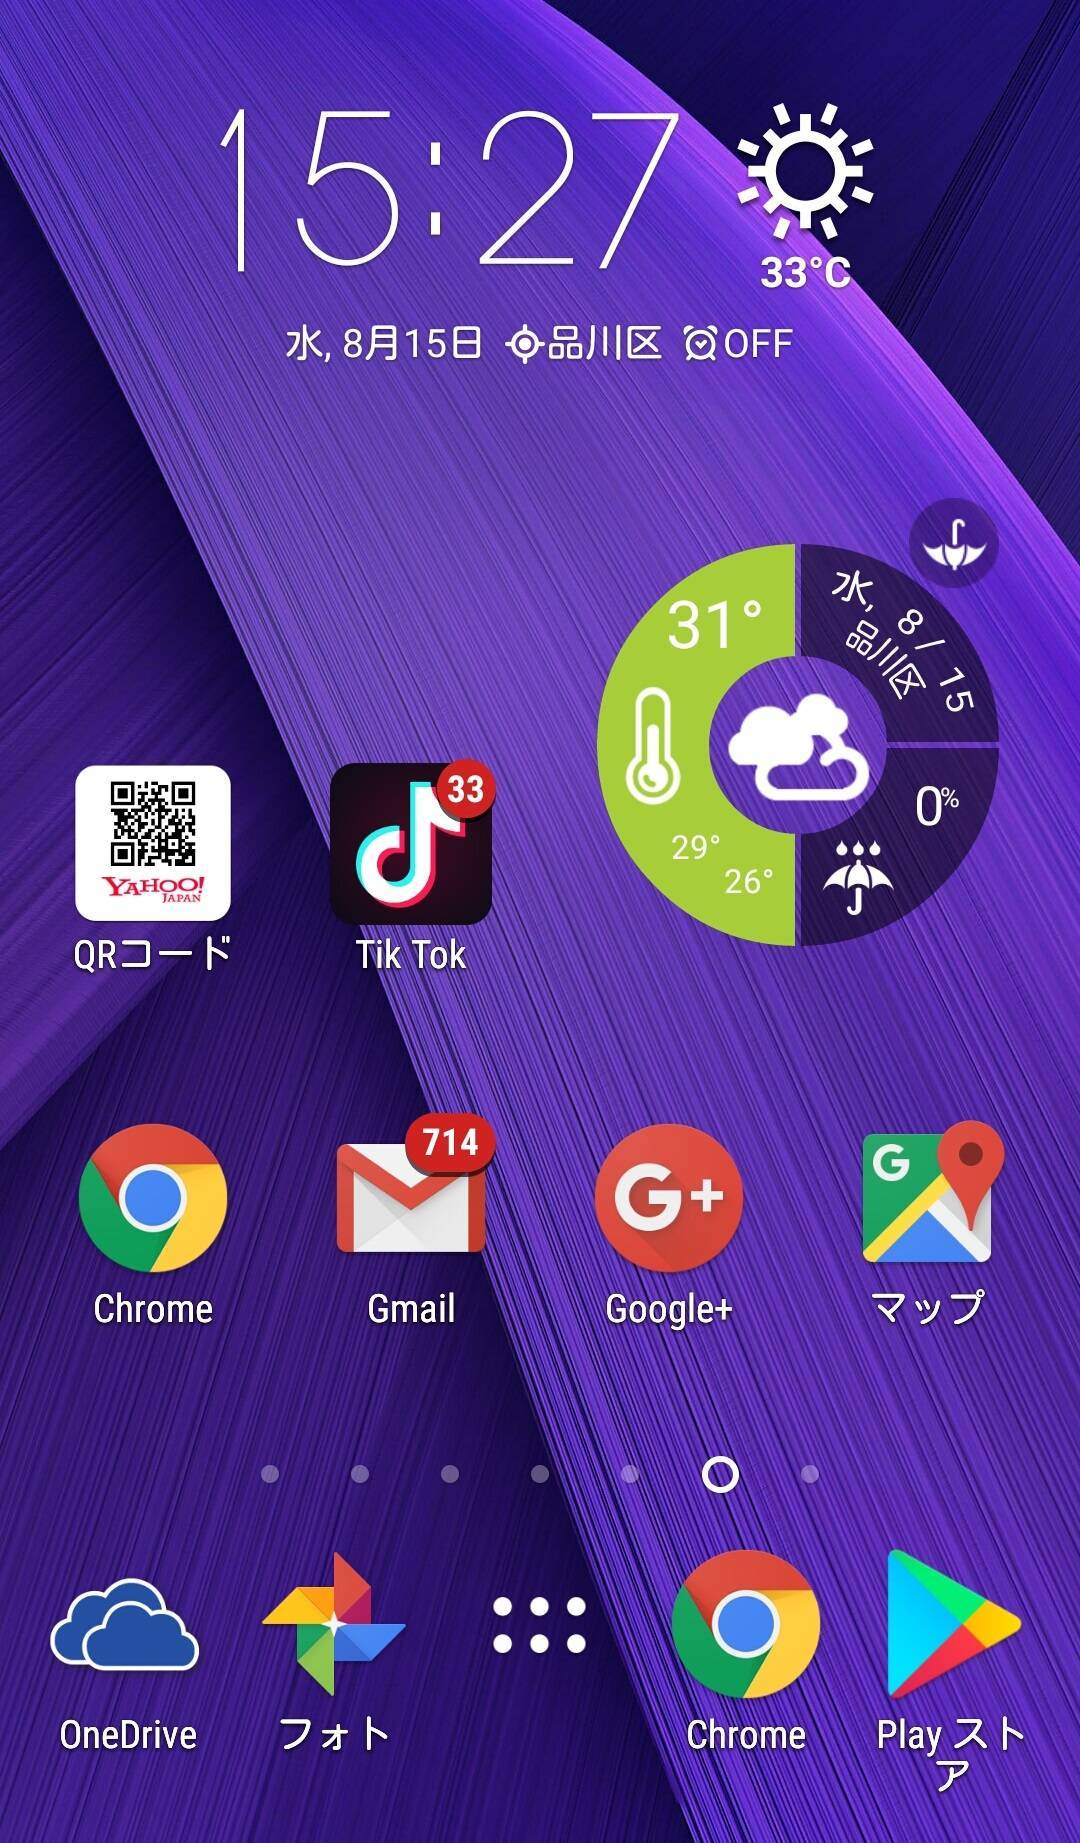 Android天気ウィジェットおすすめ6選 便利でオシャレにホーム画面を大改造の画像 10枚目 Appliv Topics